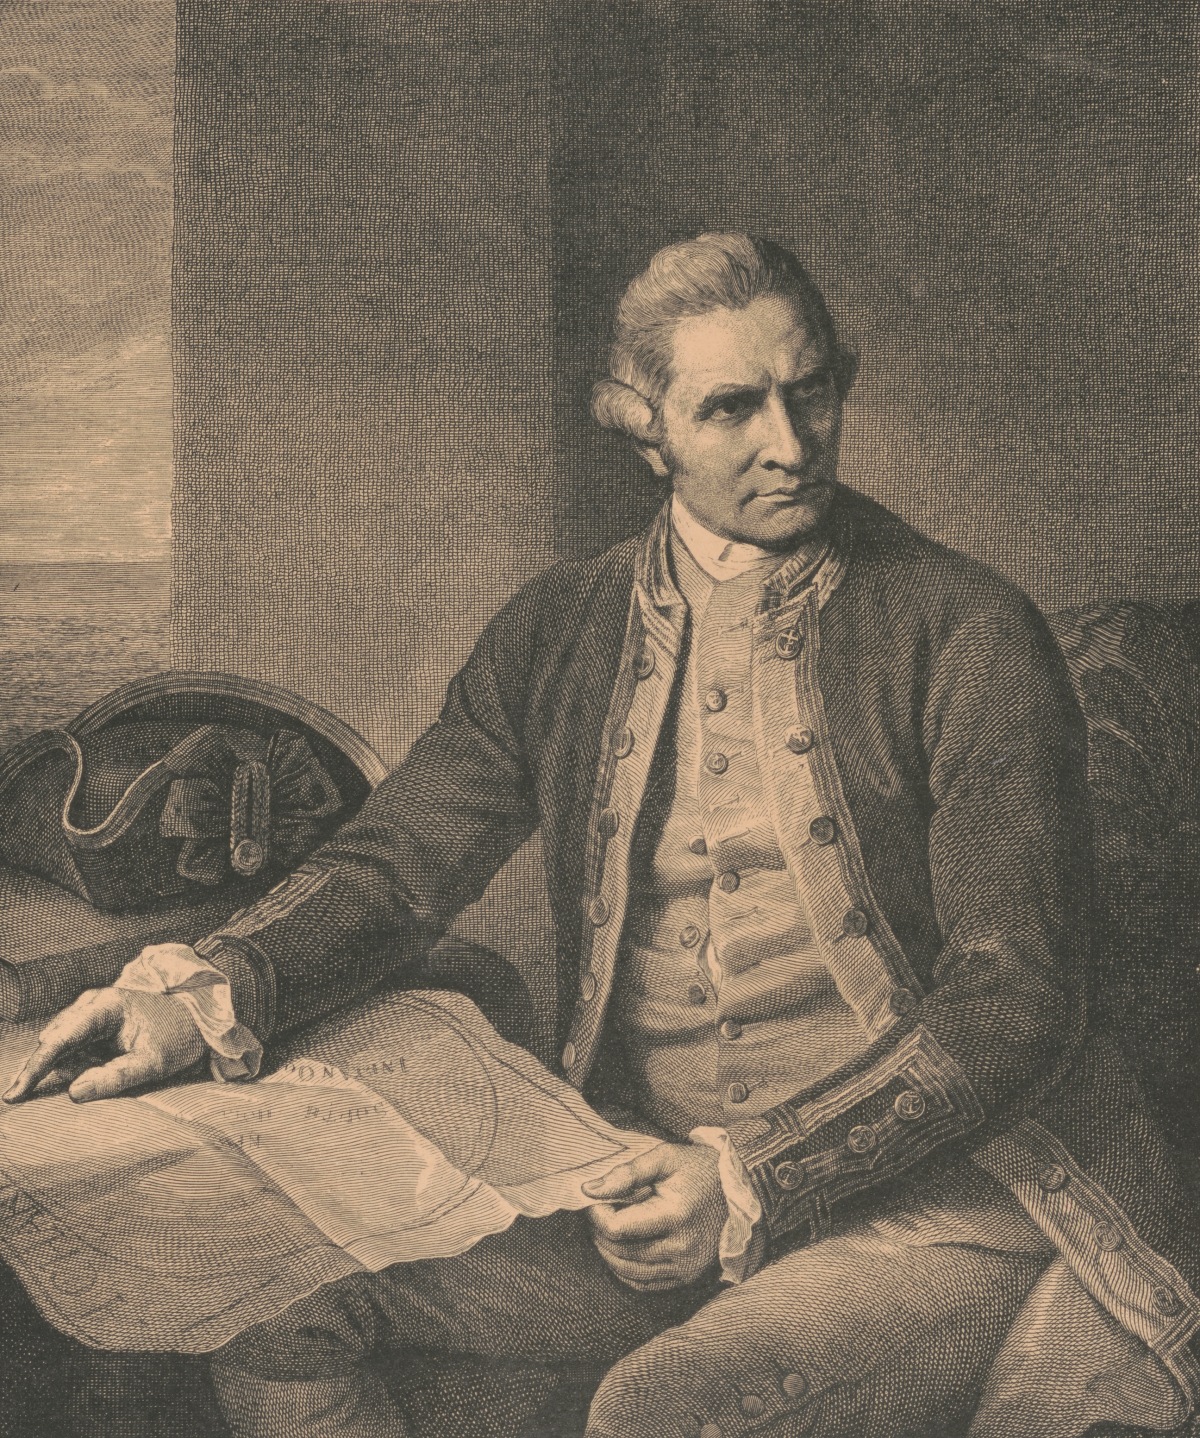 Captain Cook engraving